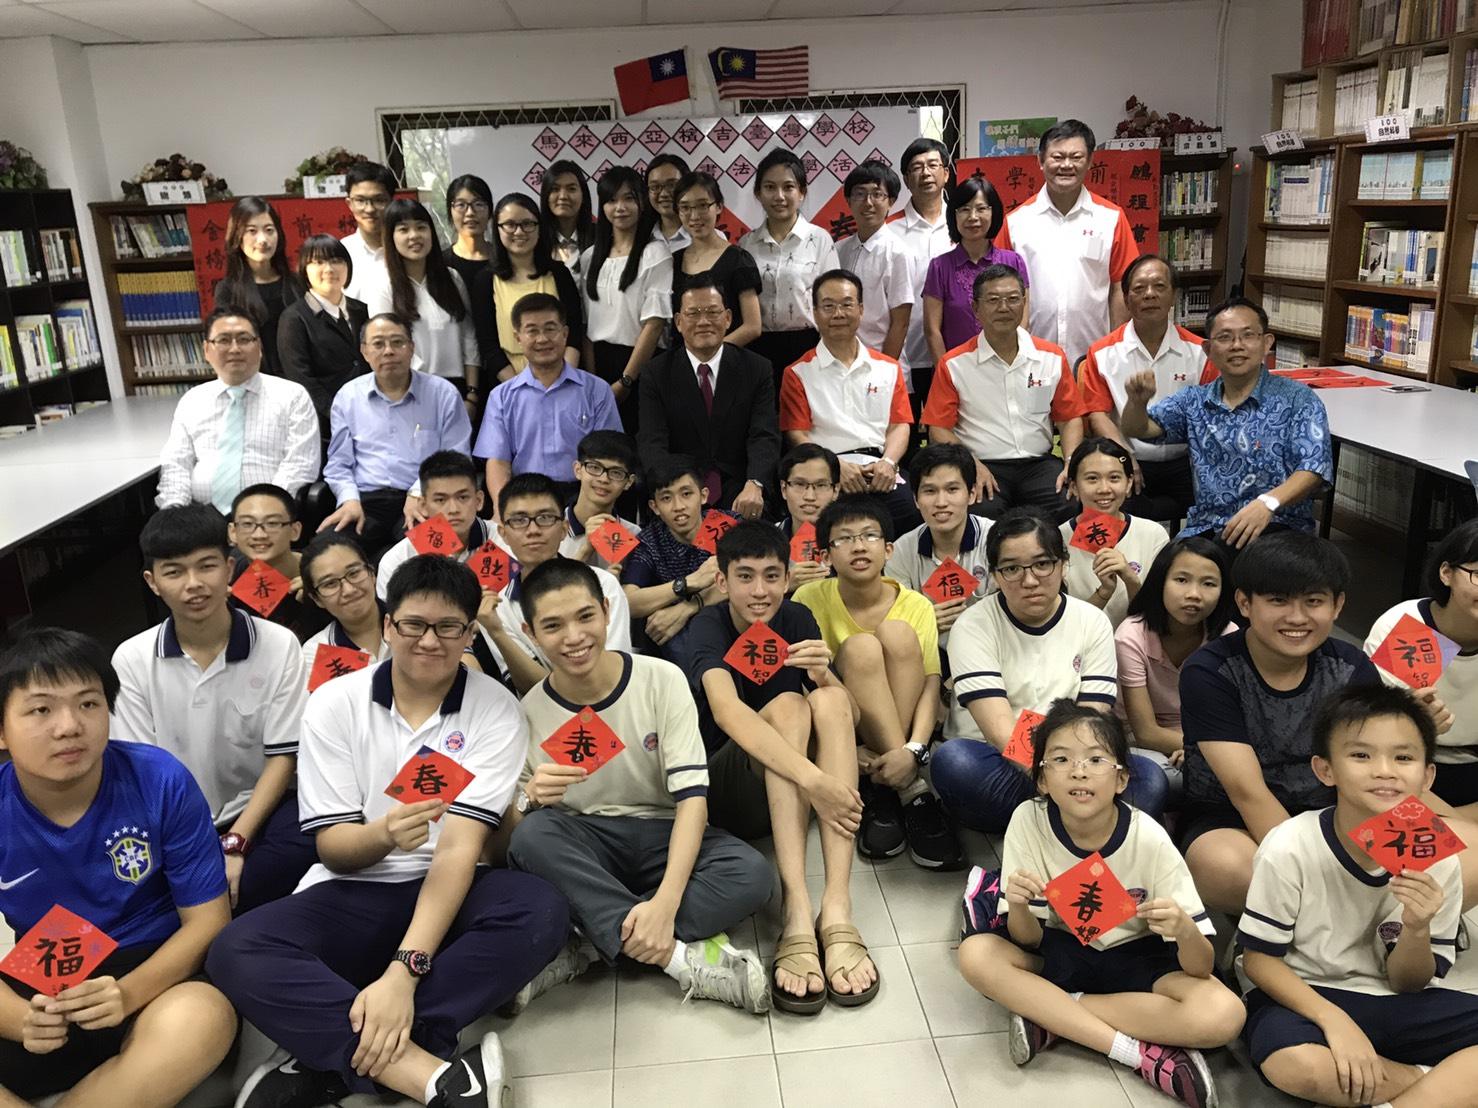   章大使景平 (中間座排左4) 與檳吉臺灣學校師生及與會貴賓合影留念。